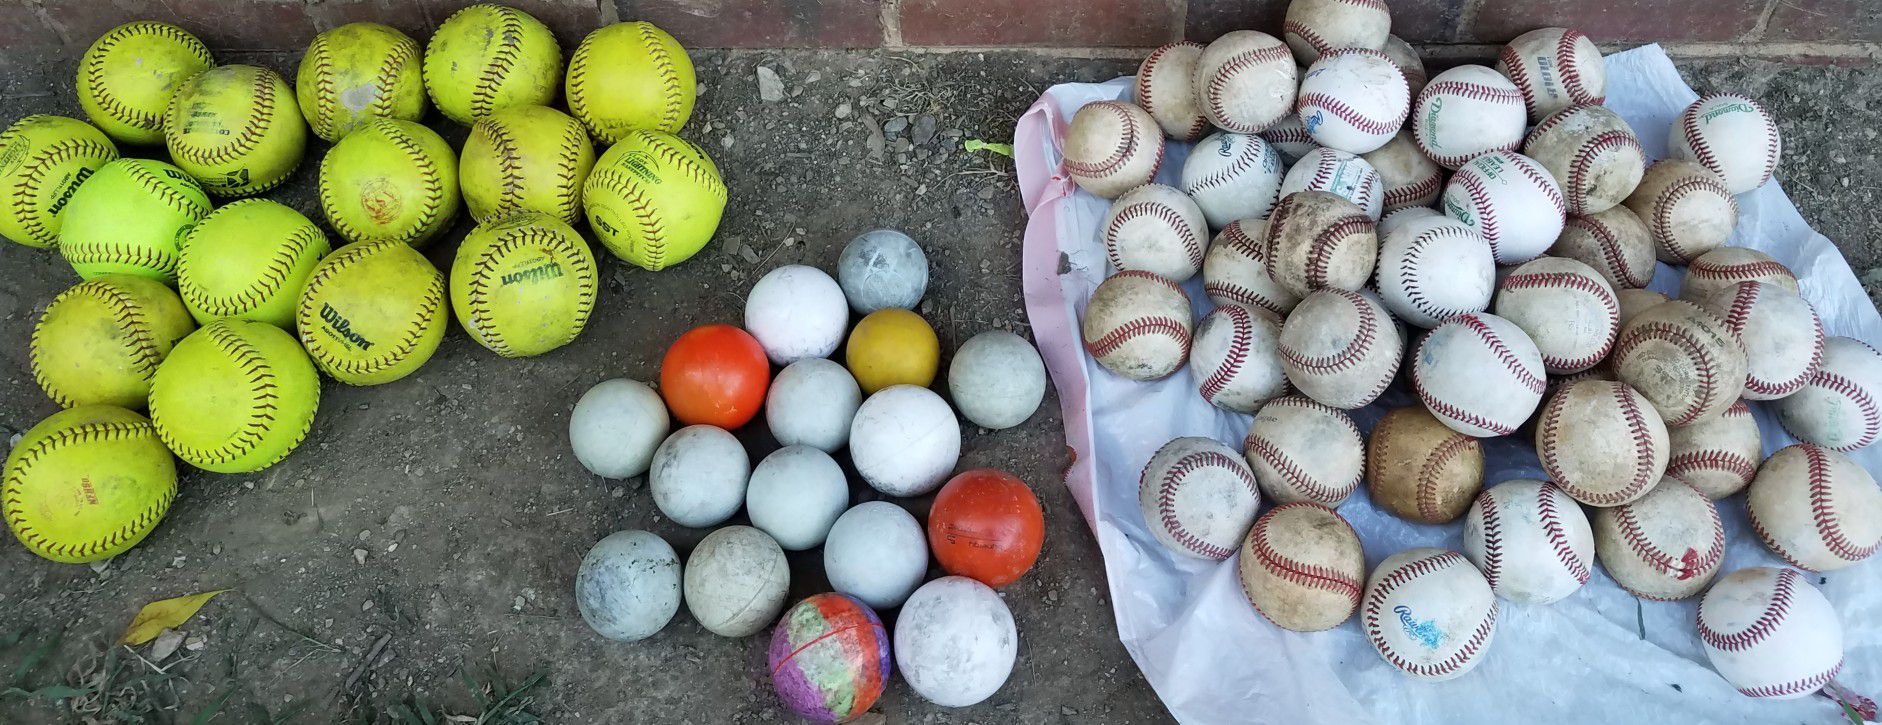 Baseball balls/75 balls/$1 each